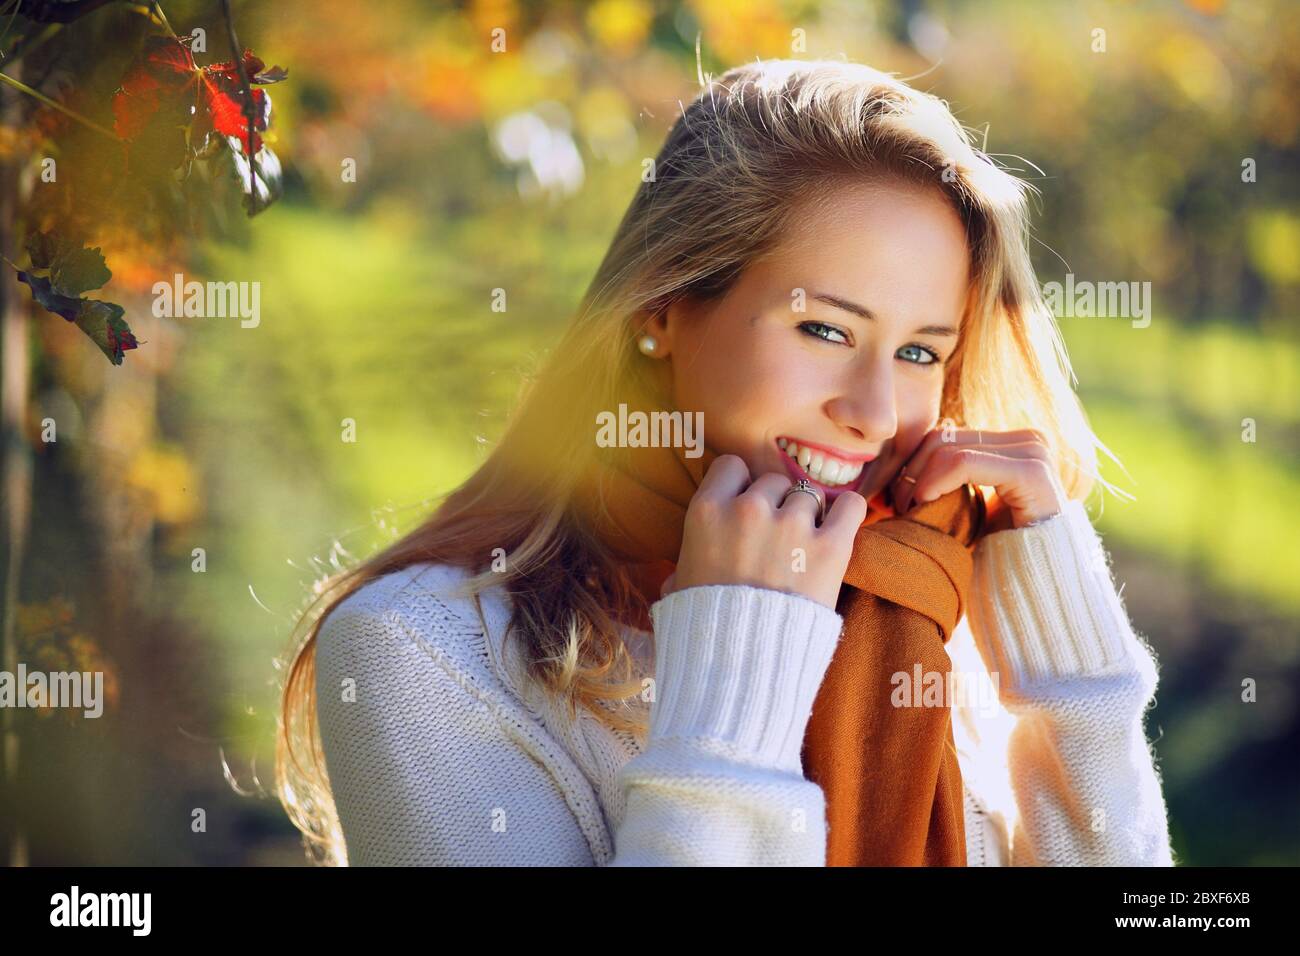 Schöne lächelnde Frau in warmen Herbstlicht. Porträt mit saisonaler Hintergrundbeleuchtung Stockfoto